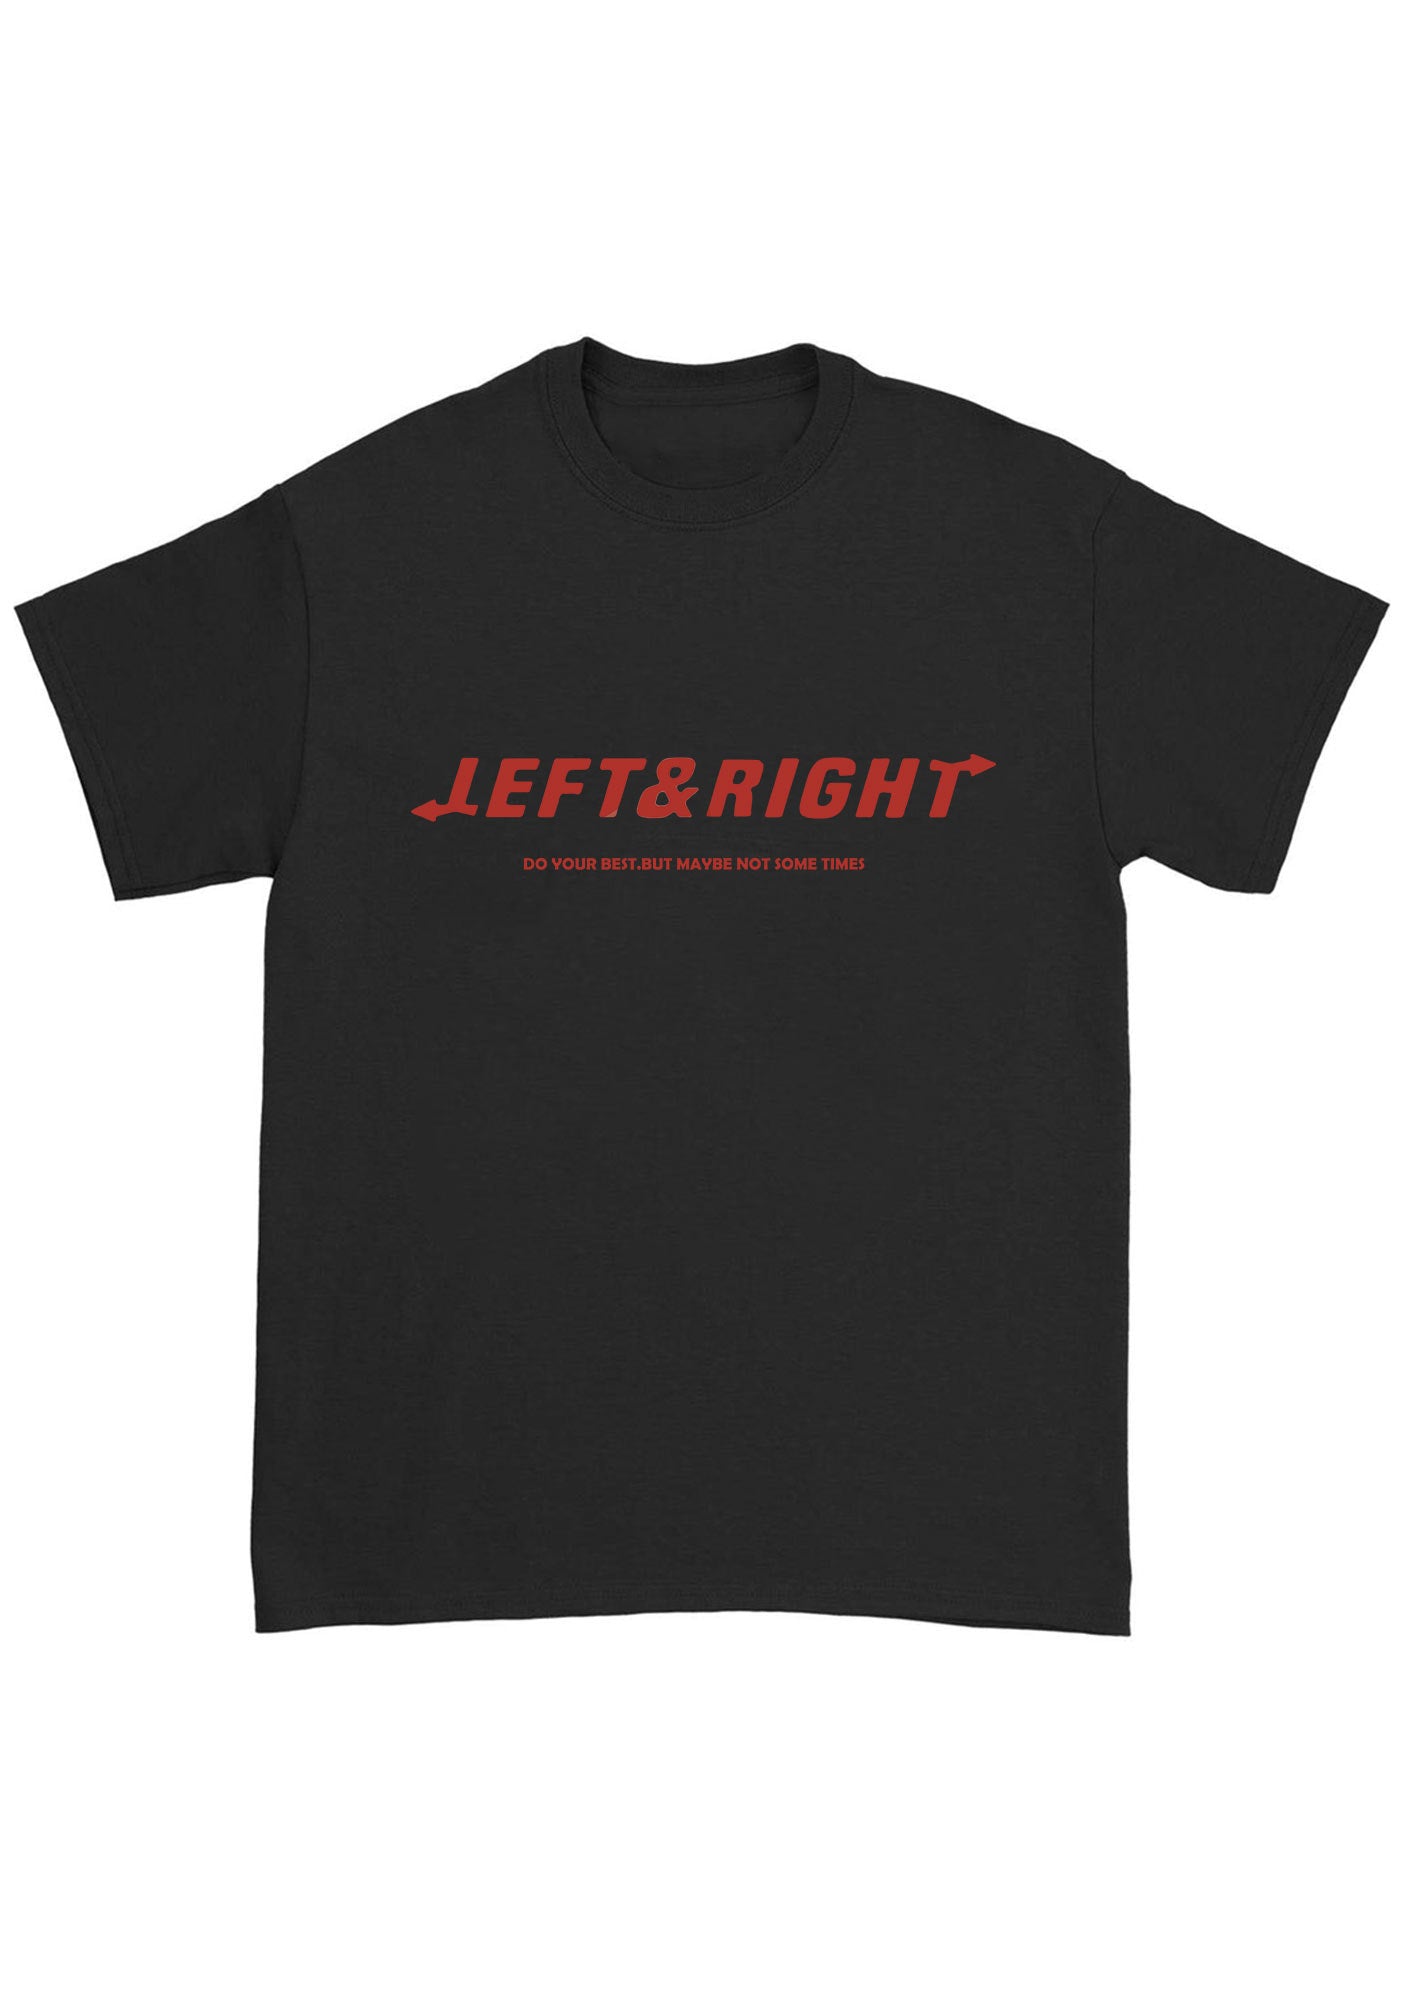 Left&Right Arrows Svt Kpop Chunky Shirt